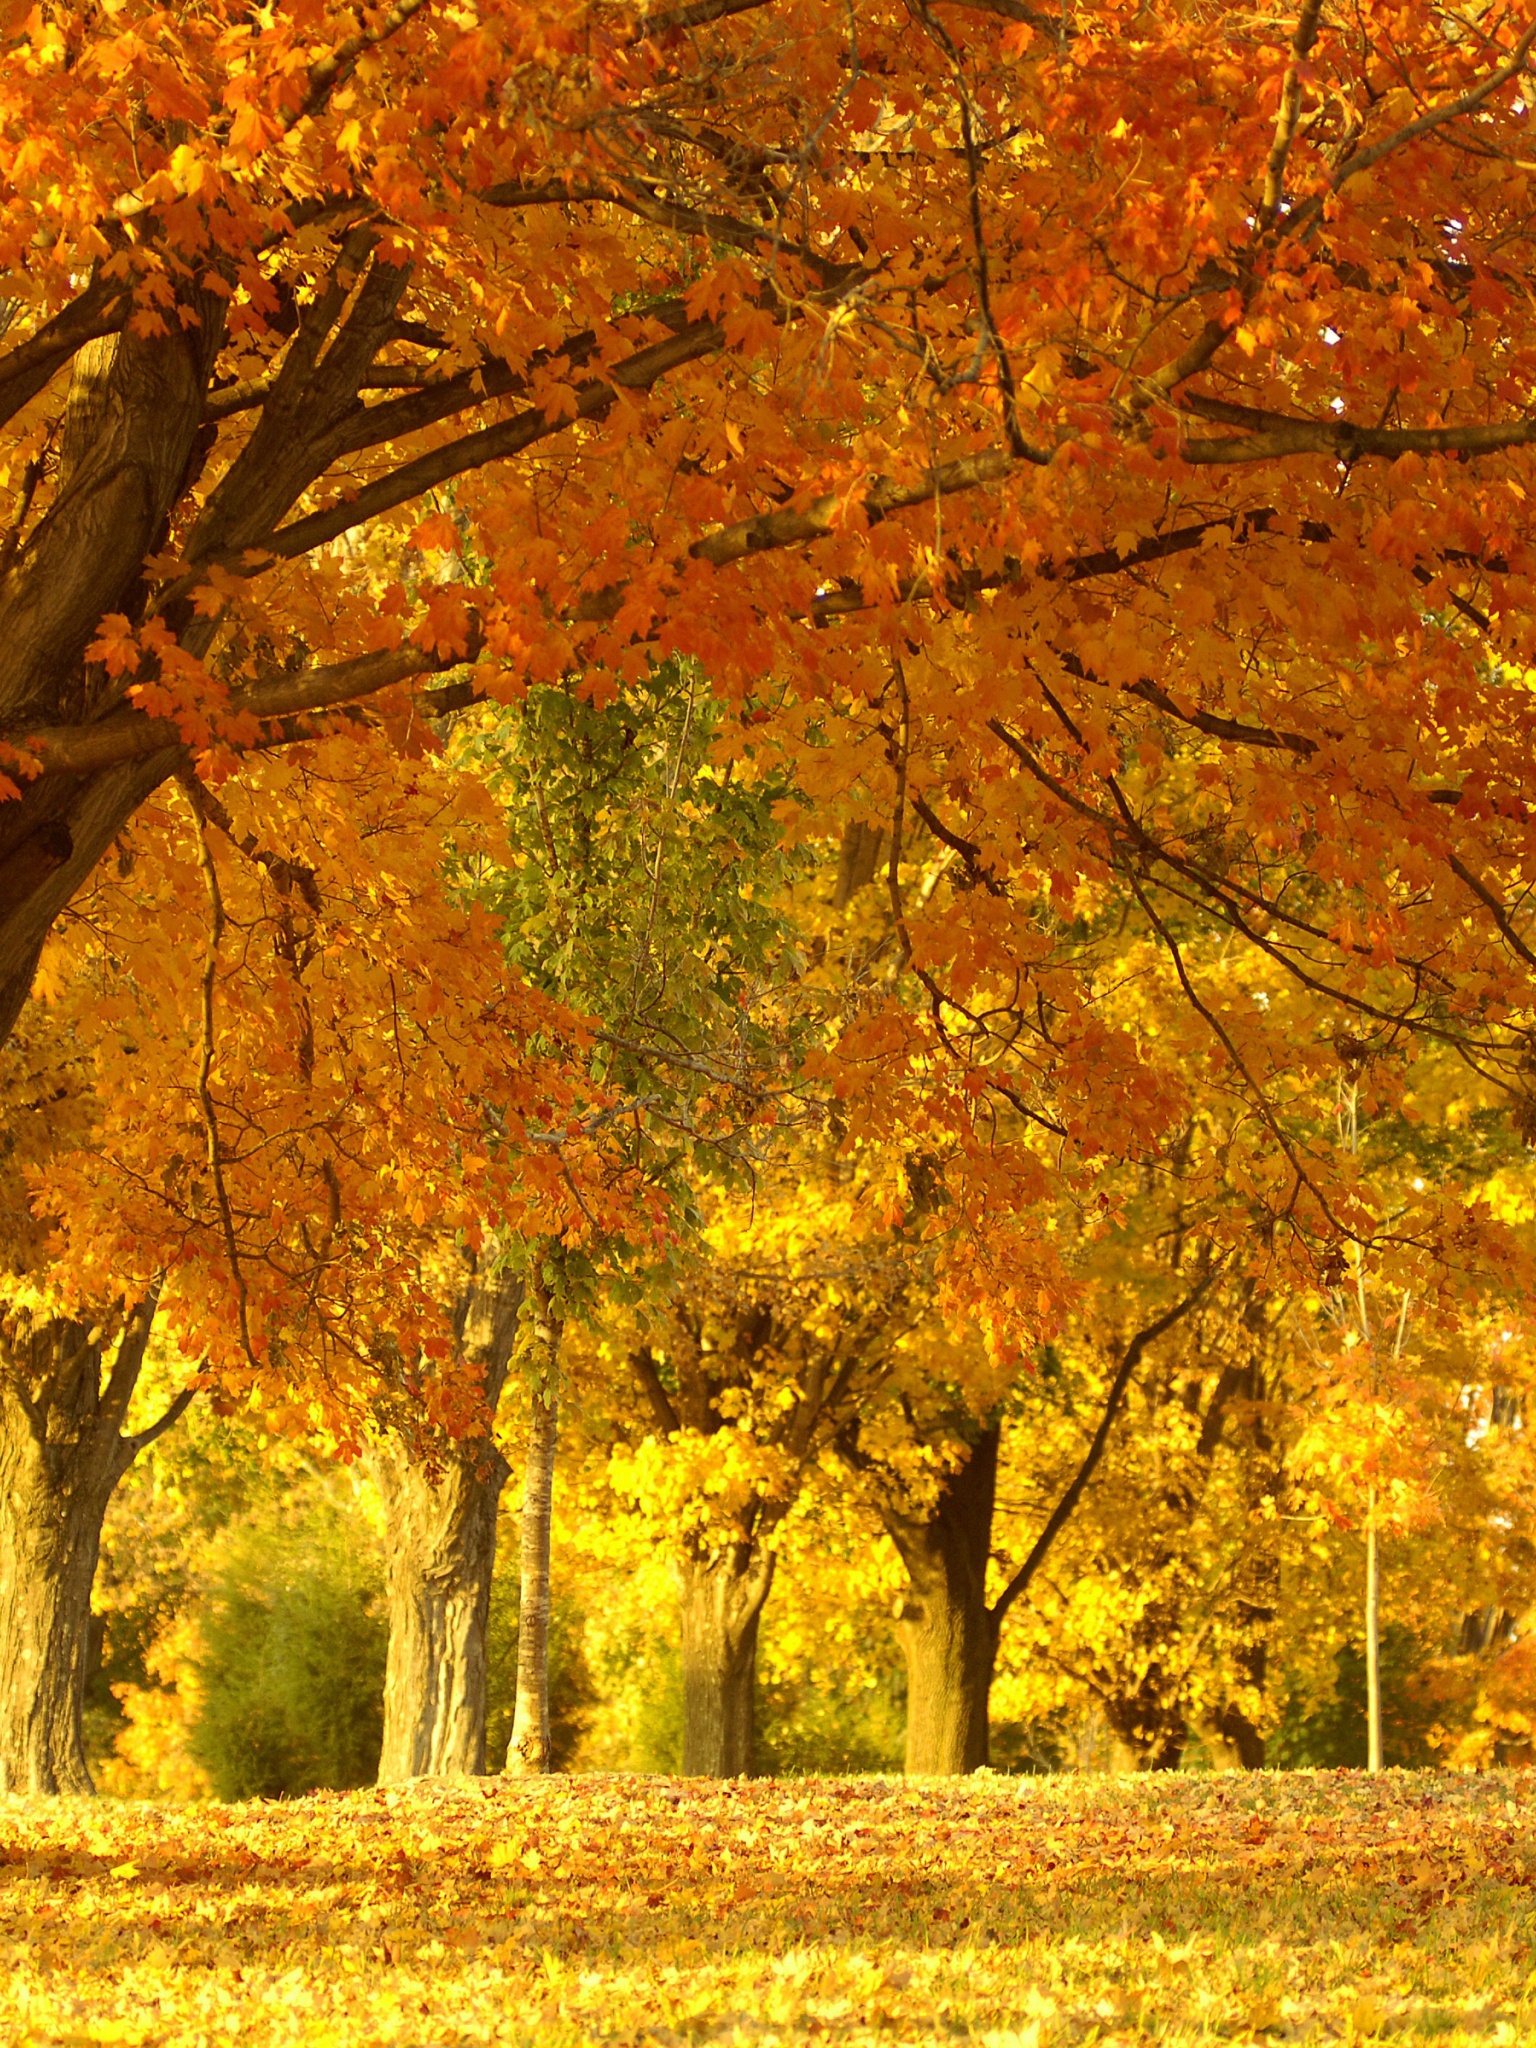 Golden Tree In Autumn